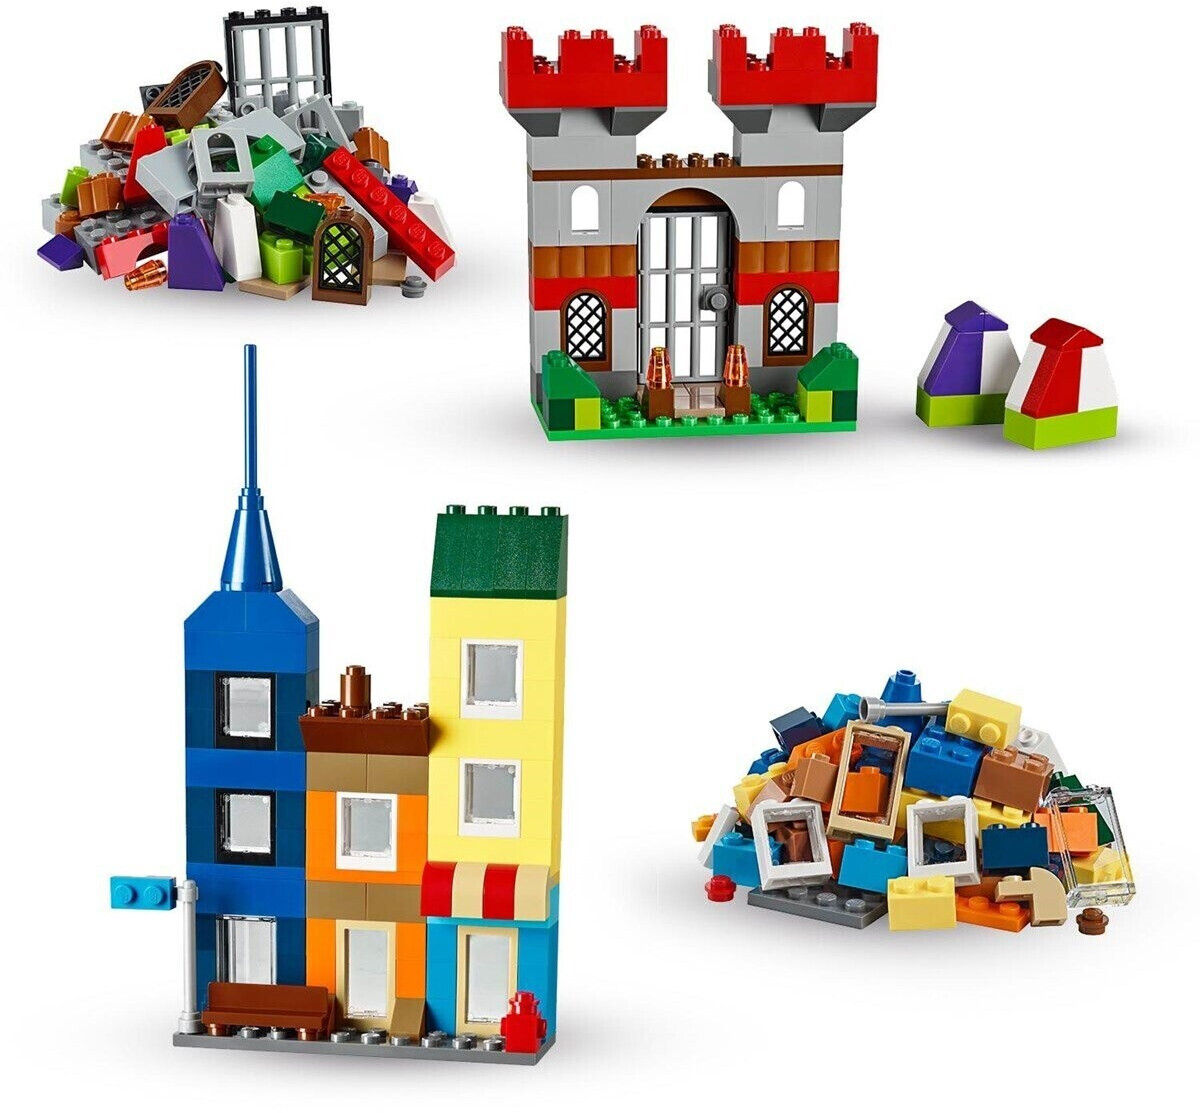 LEGO Classic 10698 - Scatola Mattoncini creativi Grande a € 44,40